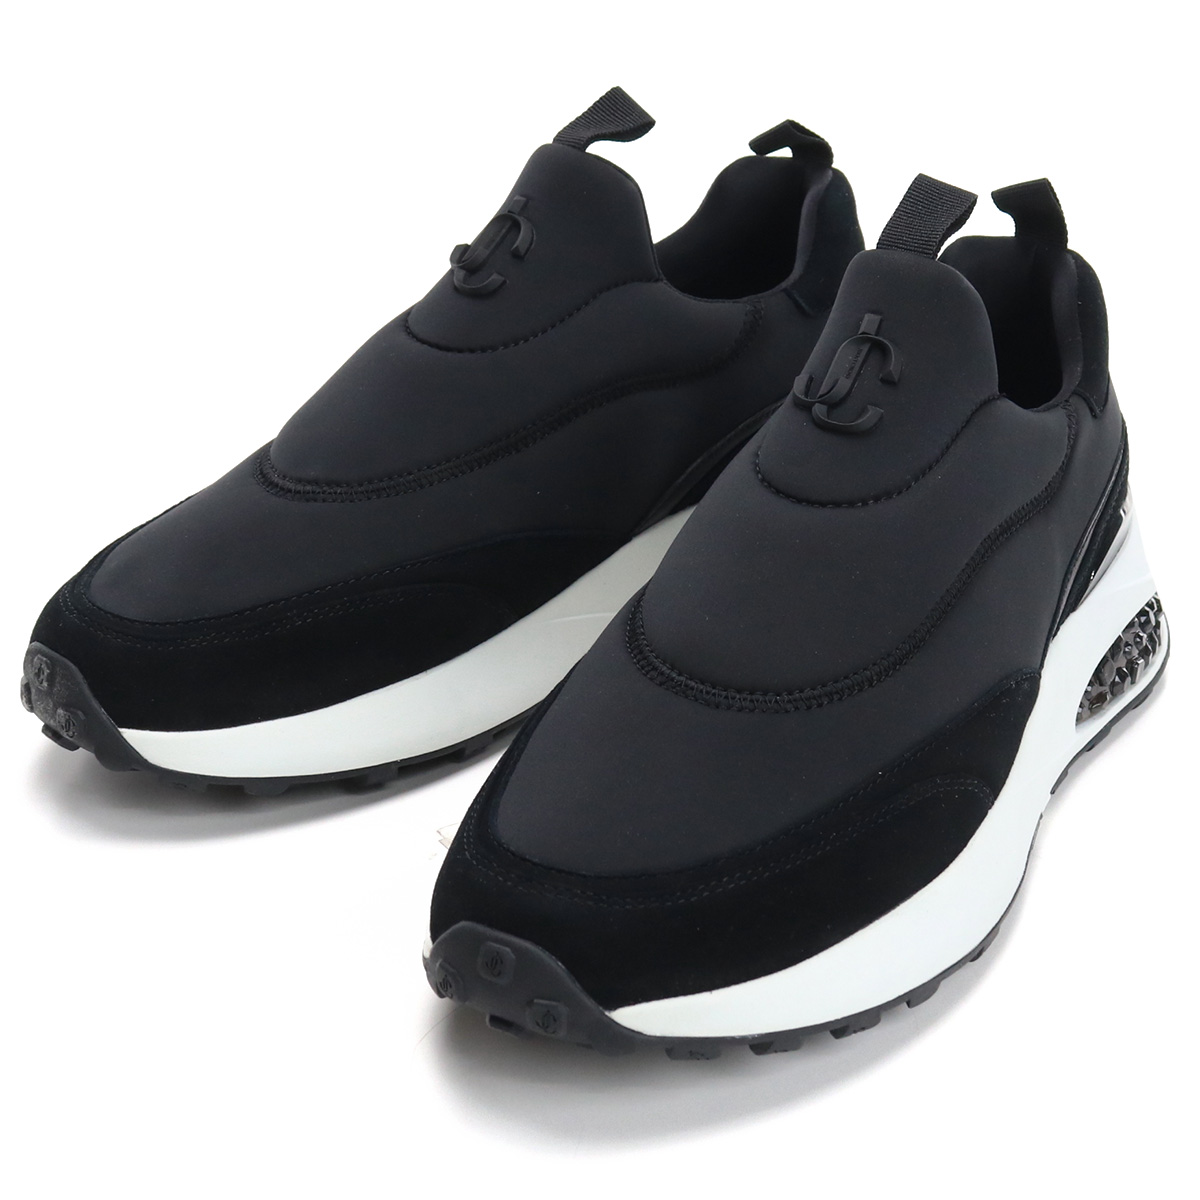 ジミーチュウ JIMMY CHOO メンズシューズ ブランドロゴ ブランド スニーカー 靴 MEMPHIS-M VZY 212 V BLACK MIX ブラック shoes-01画像